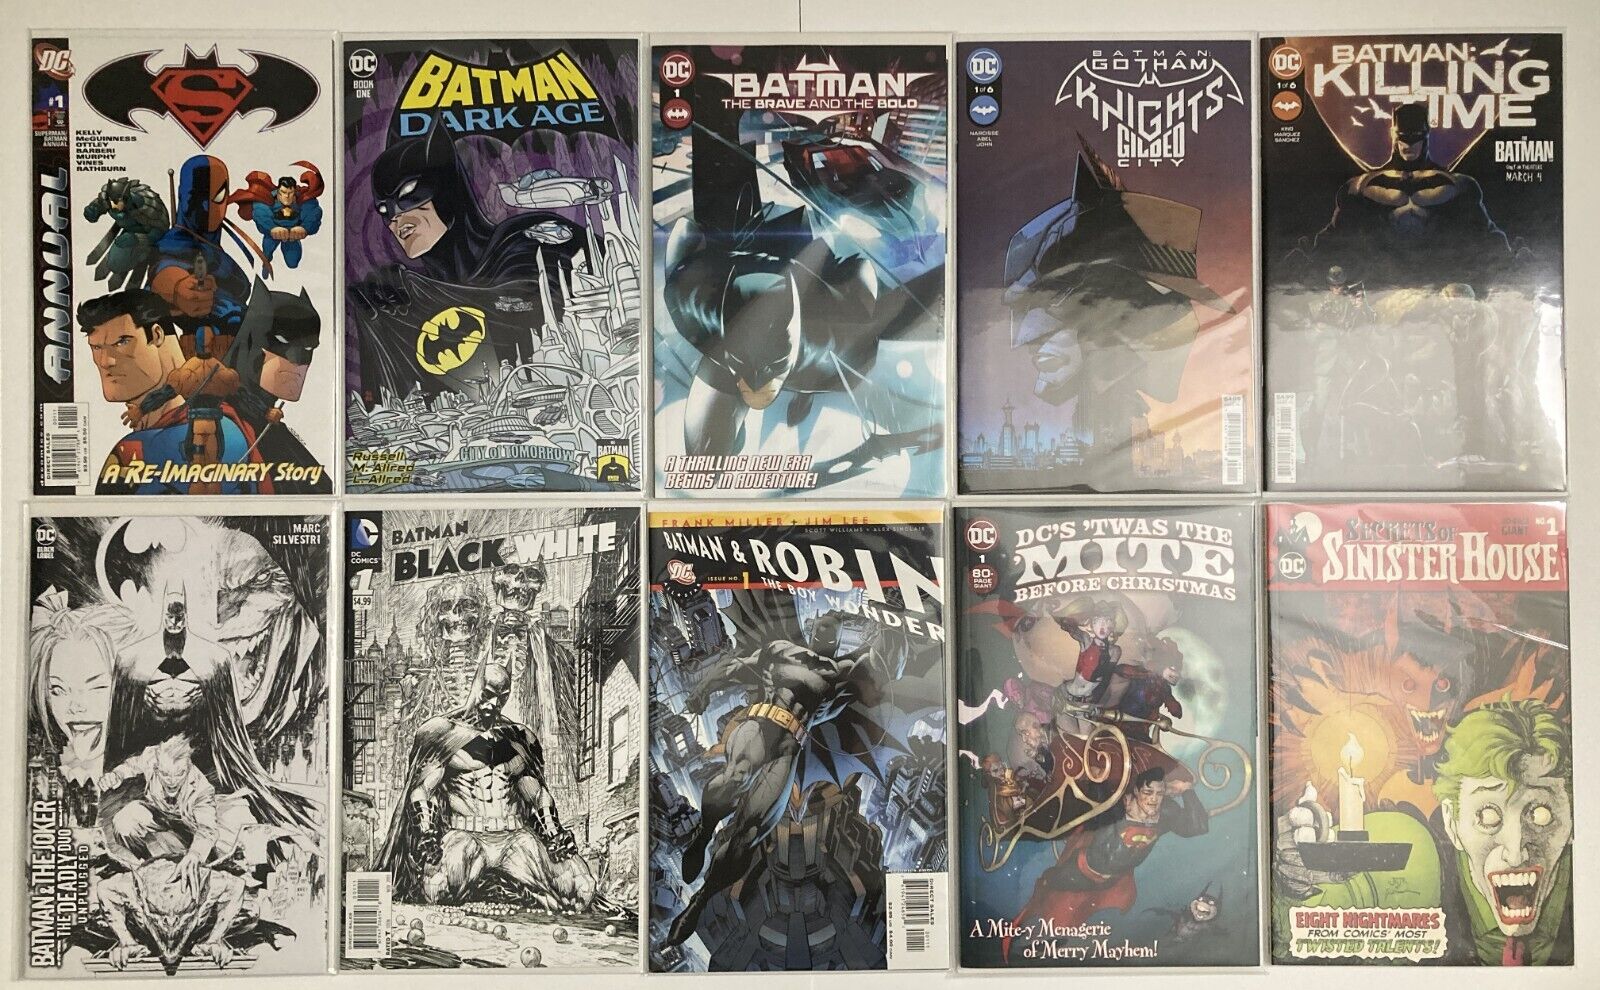 Batman Comic Lot - #1 issues - Mixed Lot of Batman and DC Comics